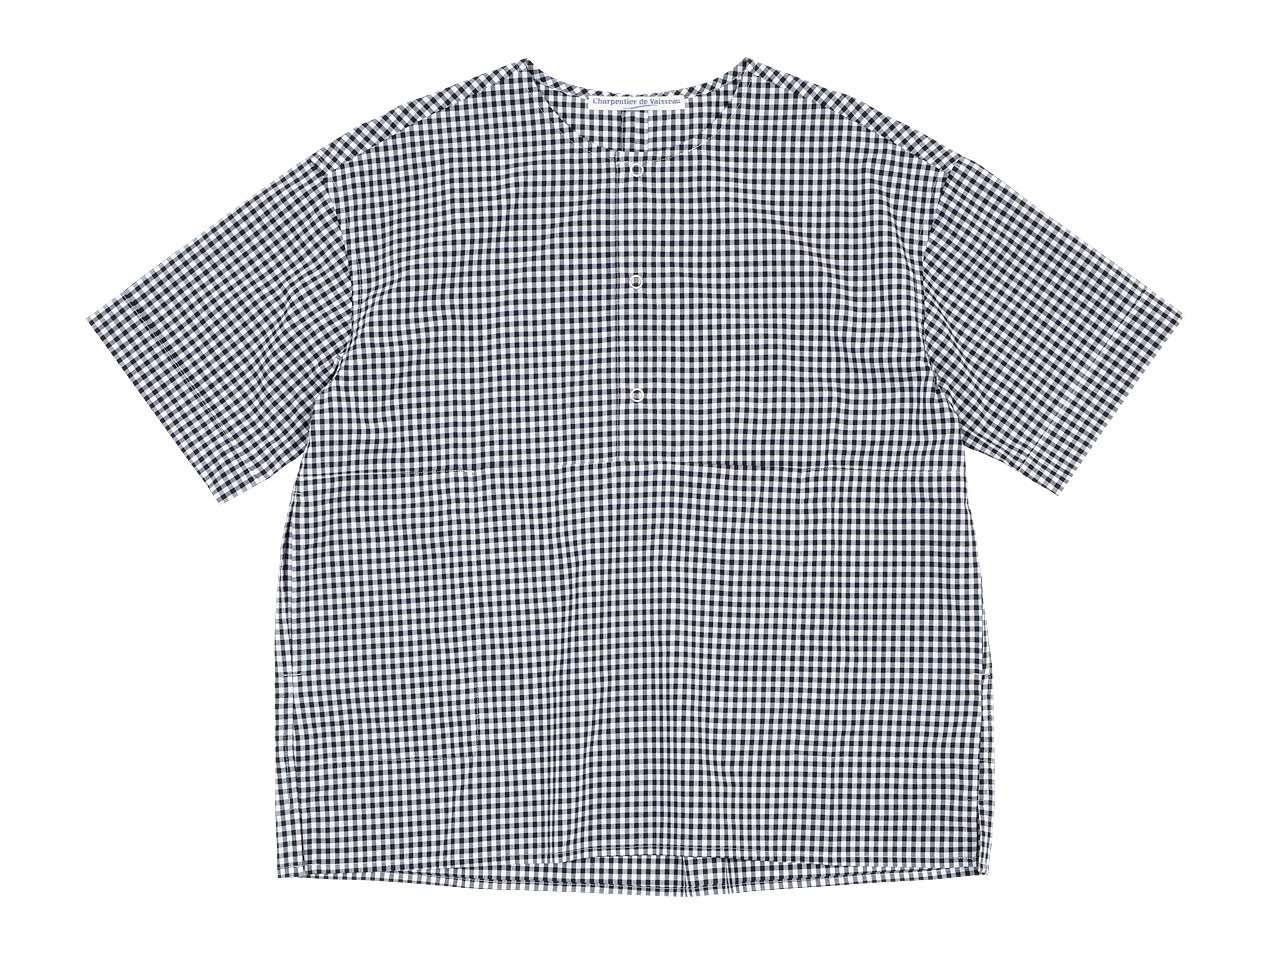 Charpentier de Vaisseau Selma Front Button Short Sleeve Shirts BLACK CHECK